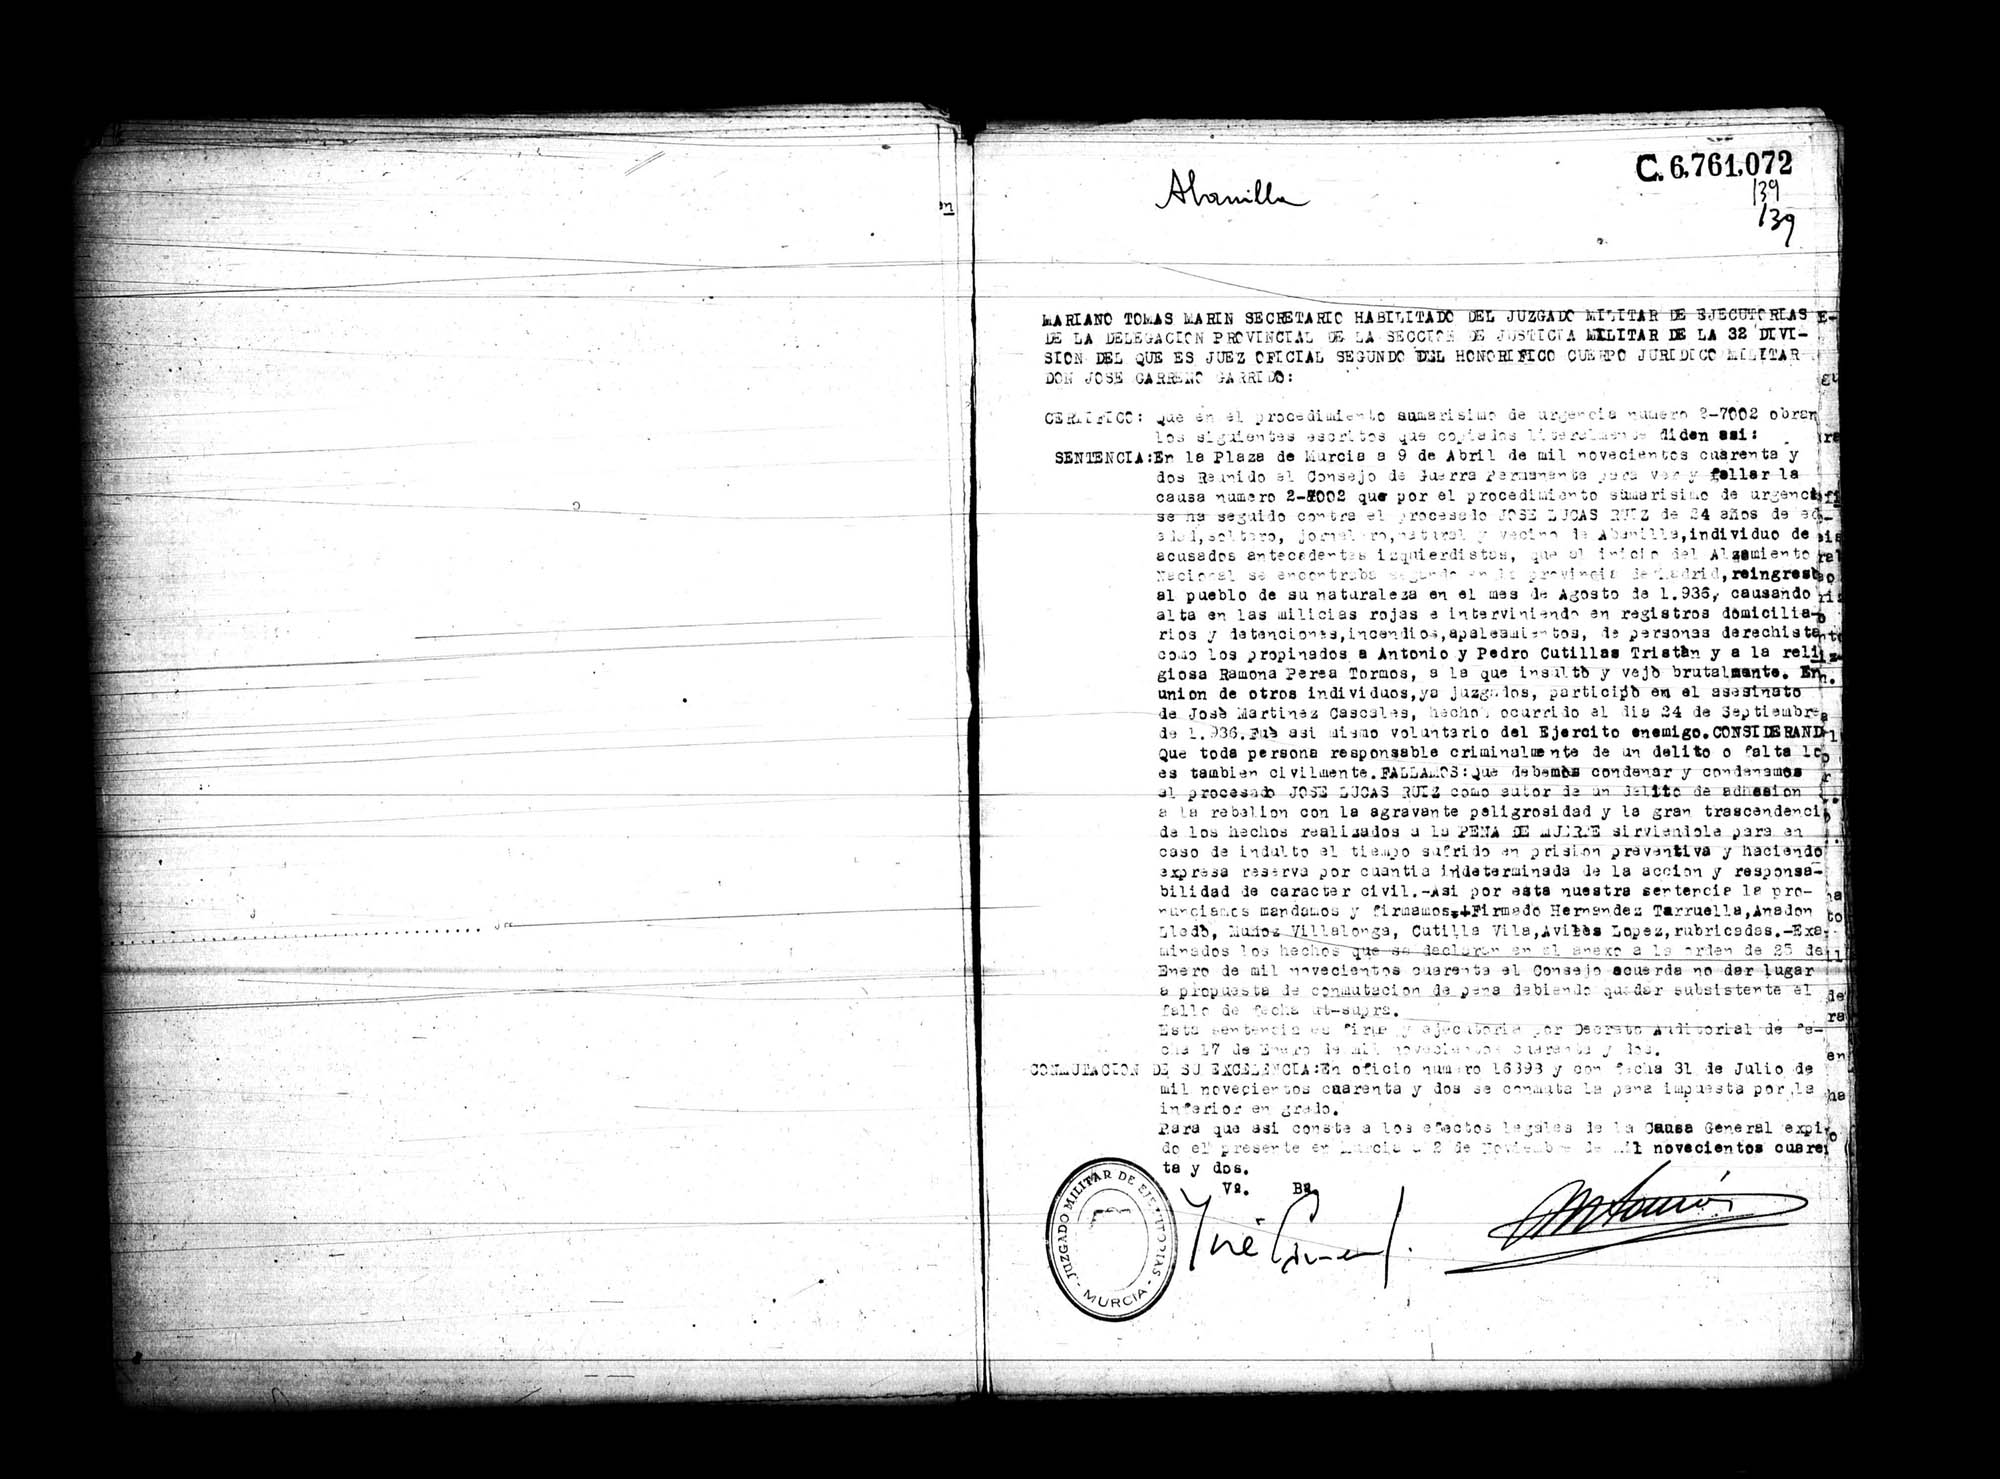 Certificado de la sentencia pronunciada contra José Lucas Ruiz, causa 2-7002, el 9 de abril de 1942 en Murcia.